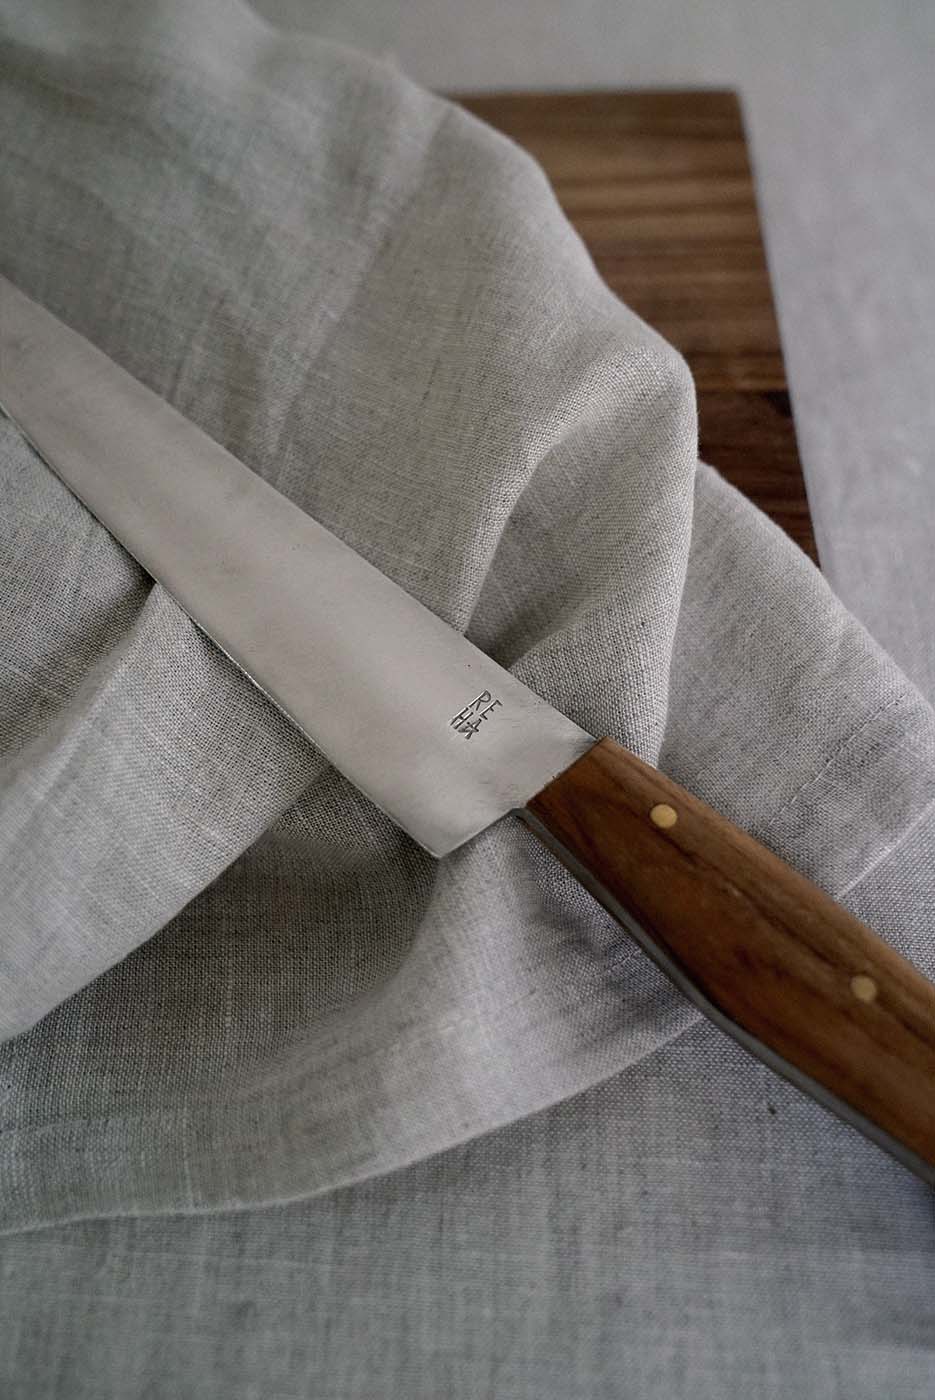 Rasoi Chef’s Knife